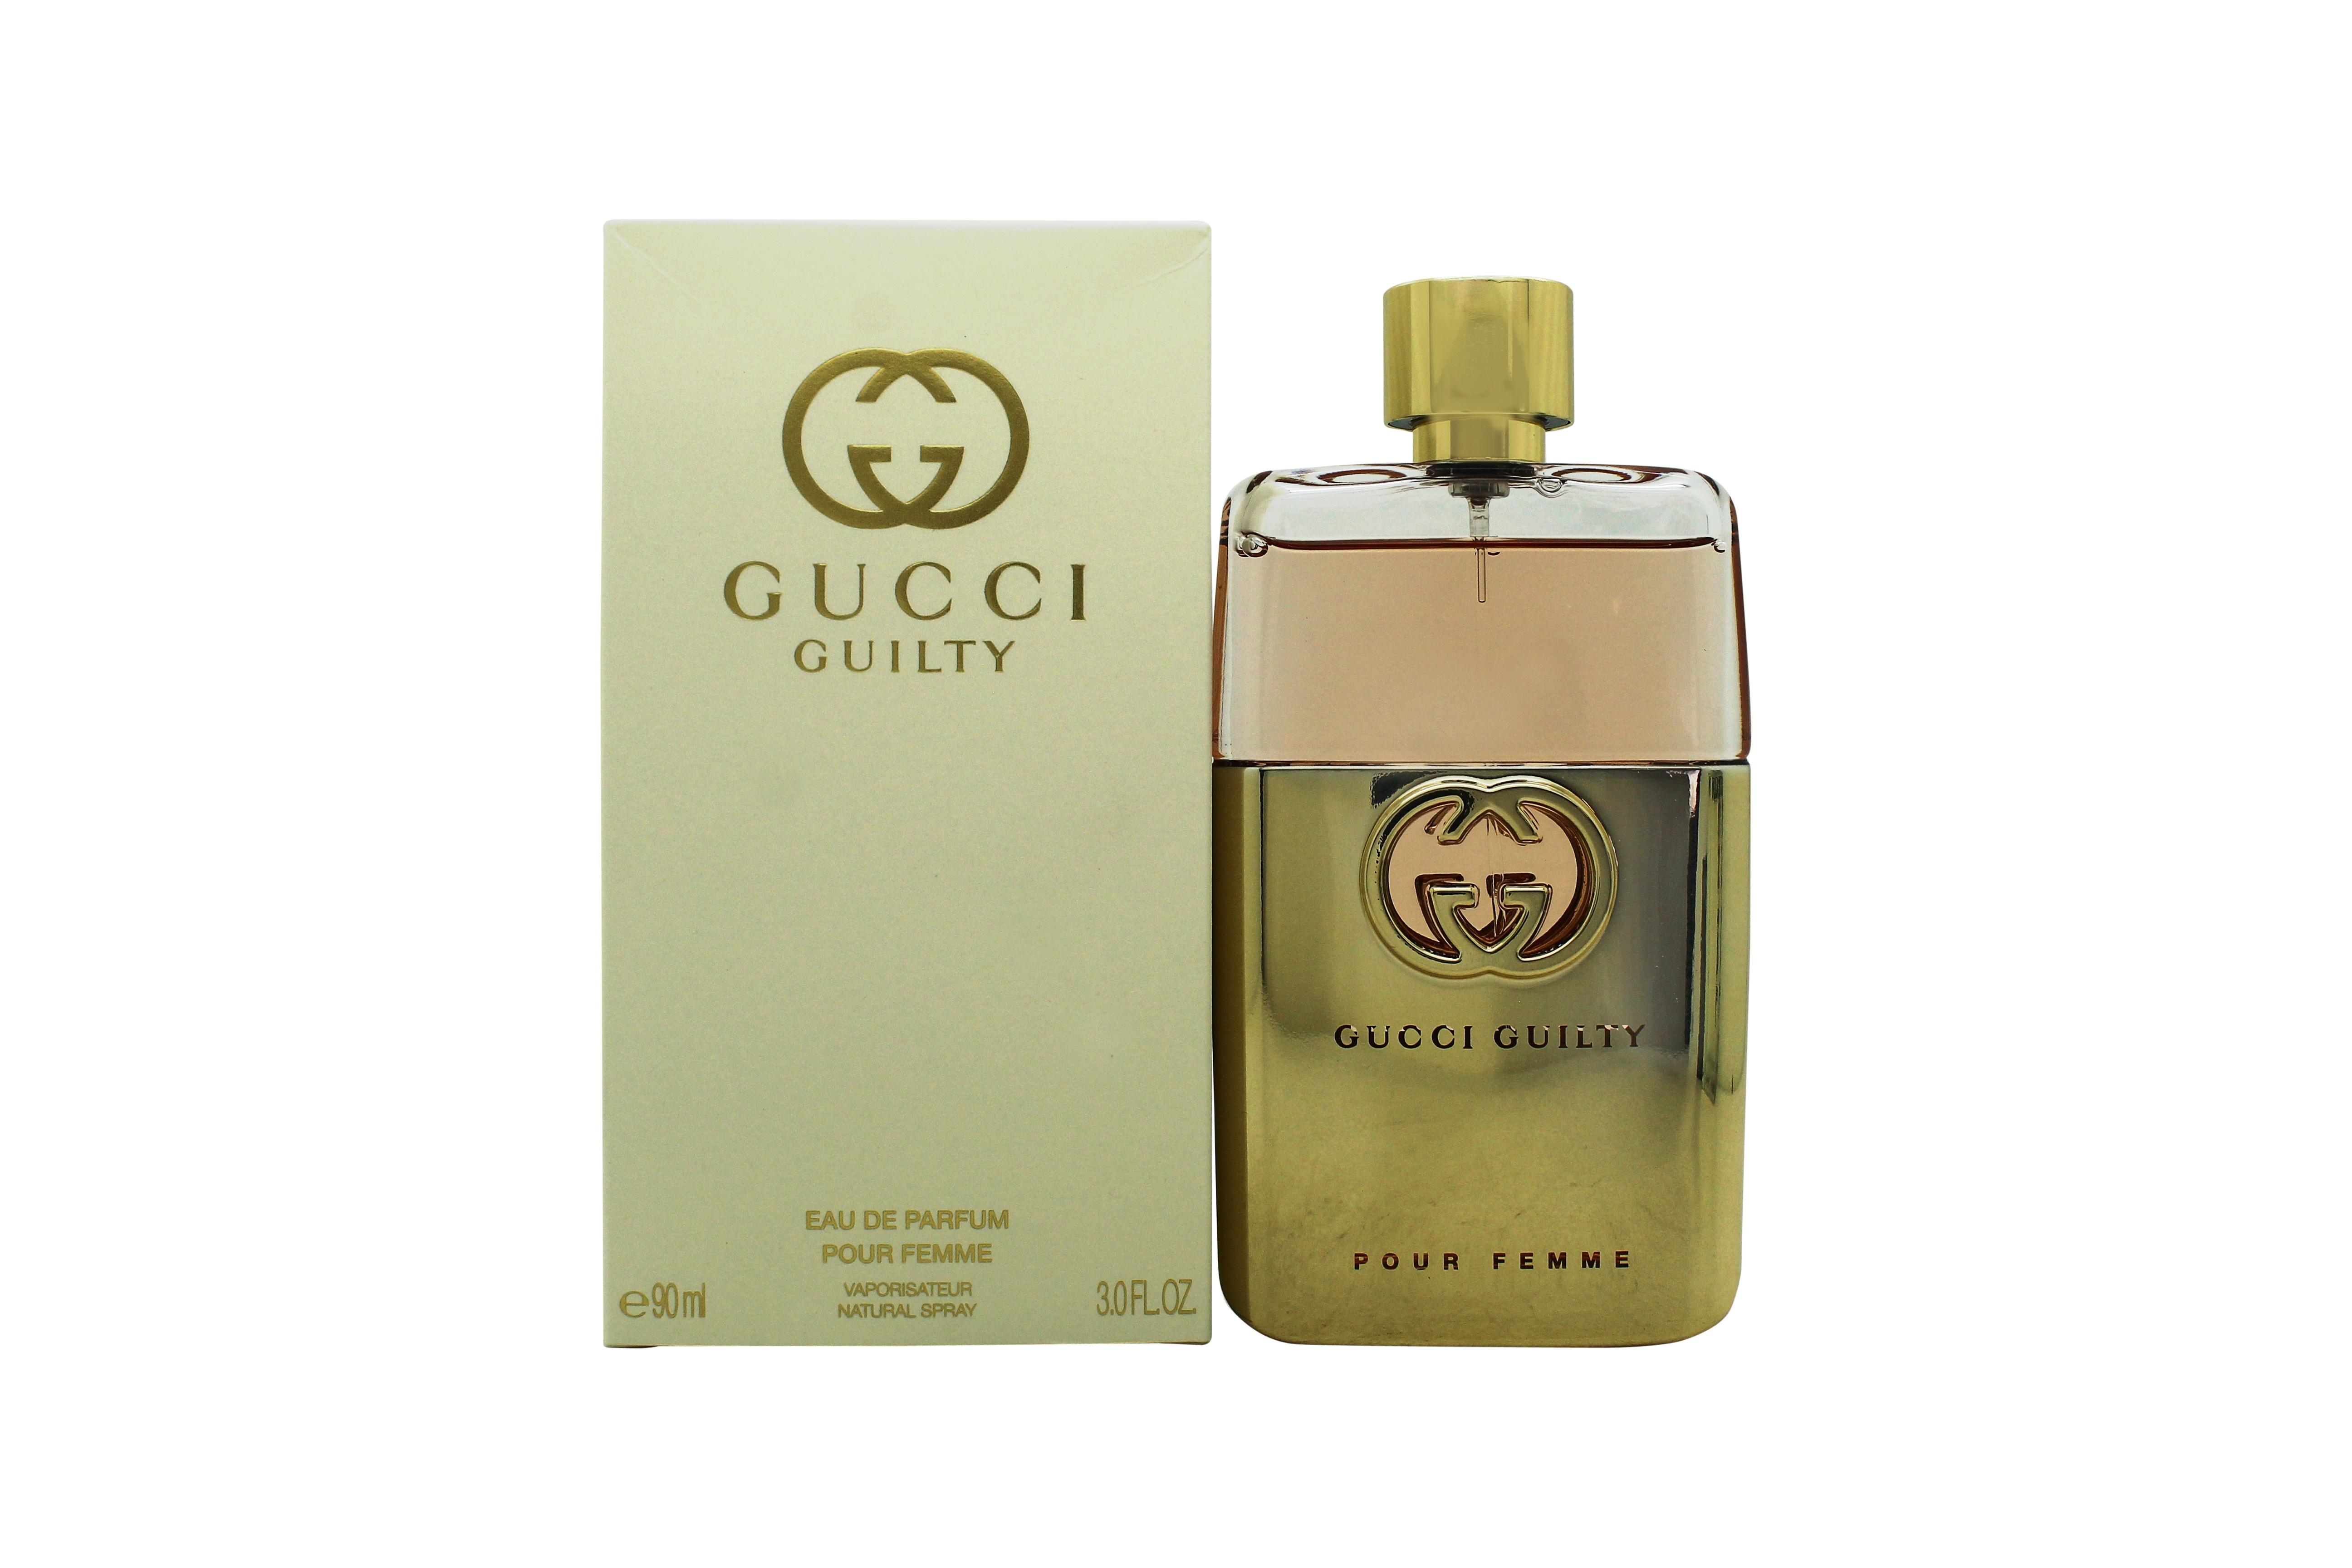 Gucci Guilty Pour Femme Eau de Parfum 90ml Spray